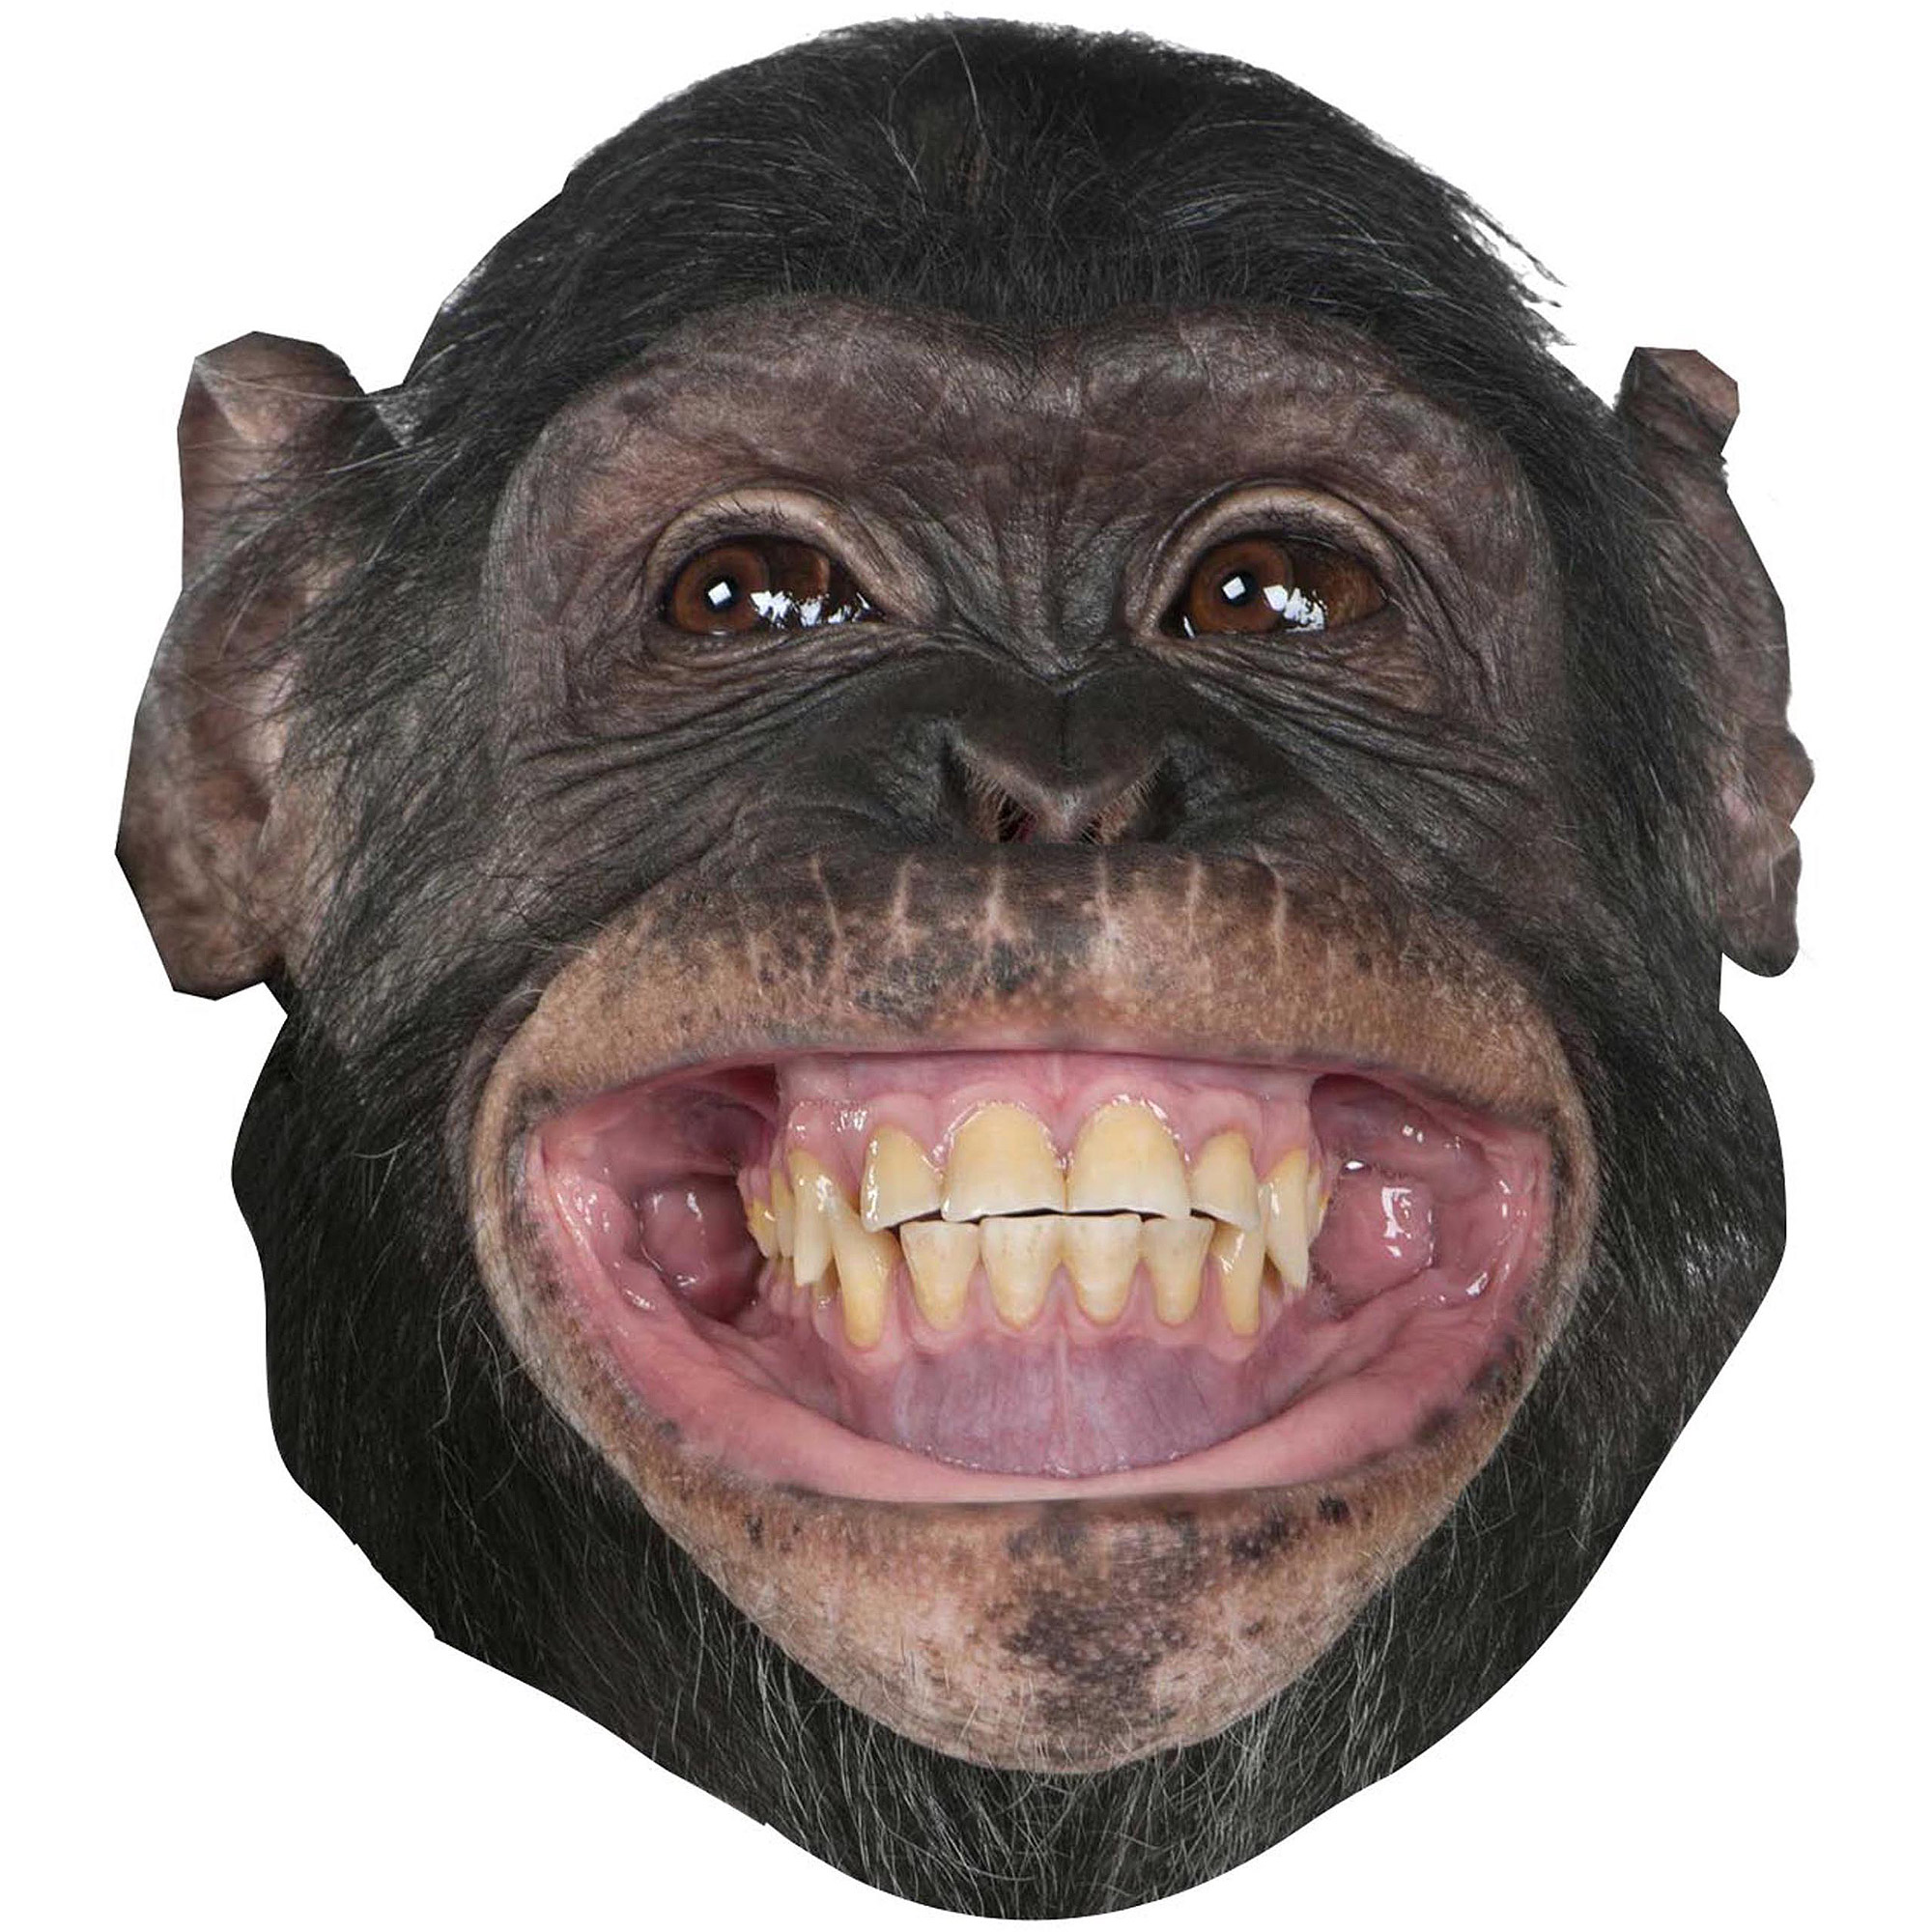 Halloween Giant Monkey Head Mask - Walmart.com